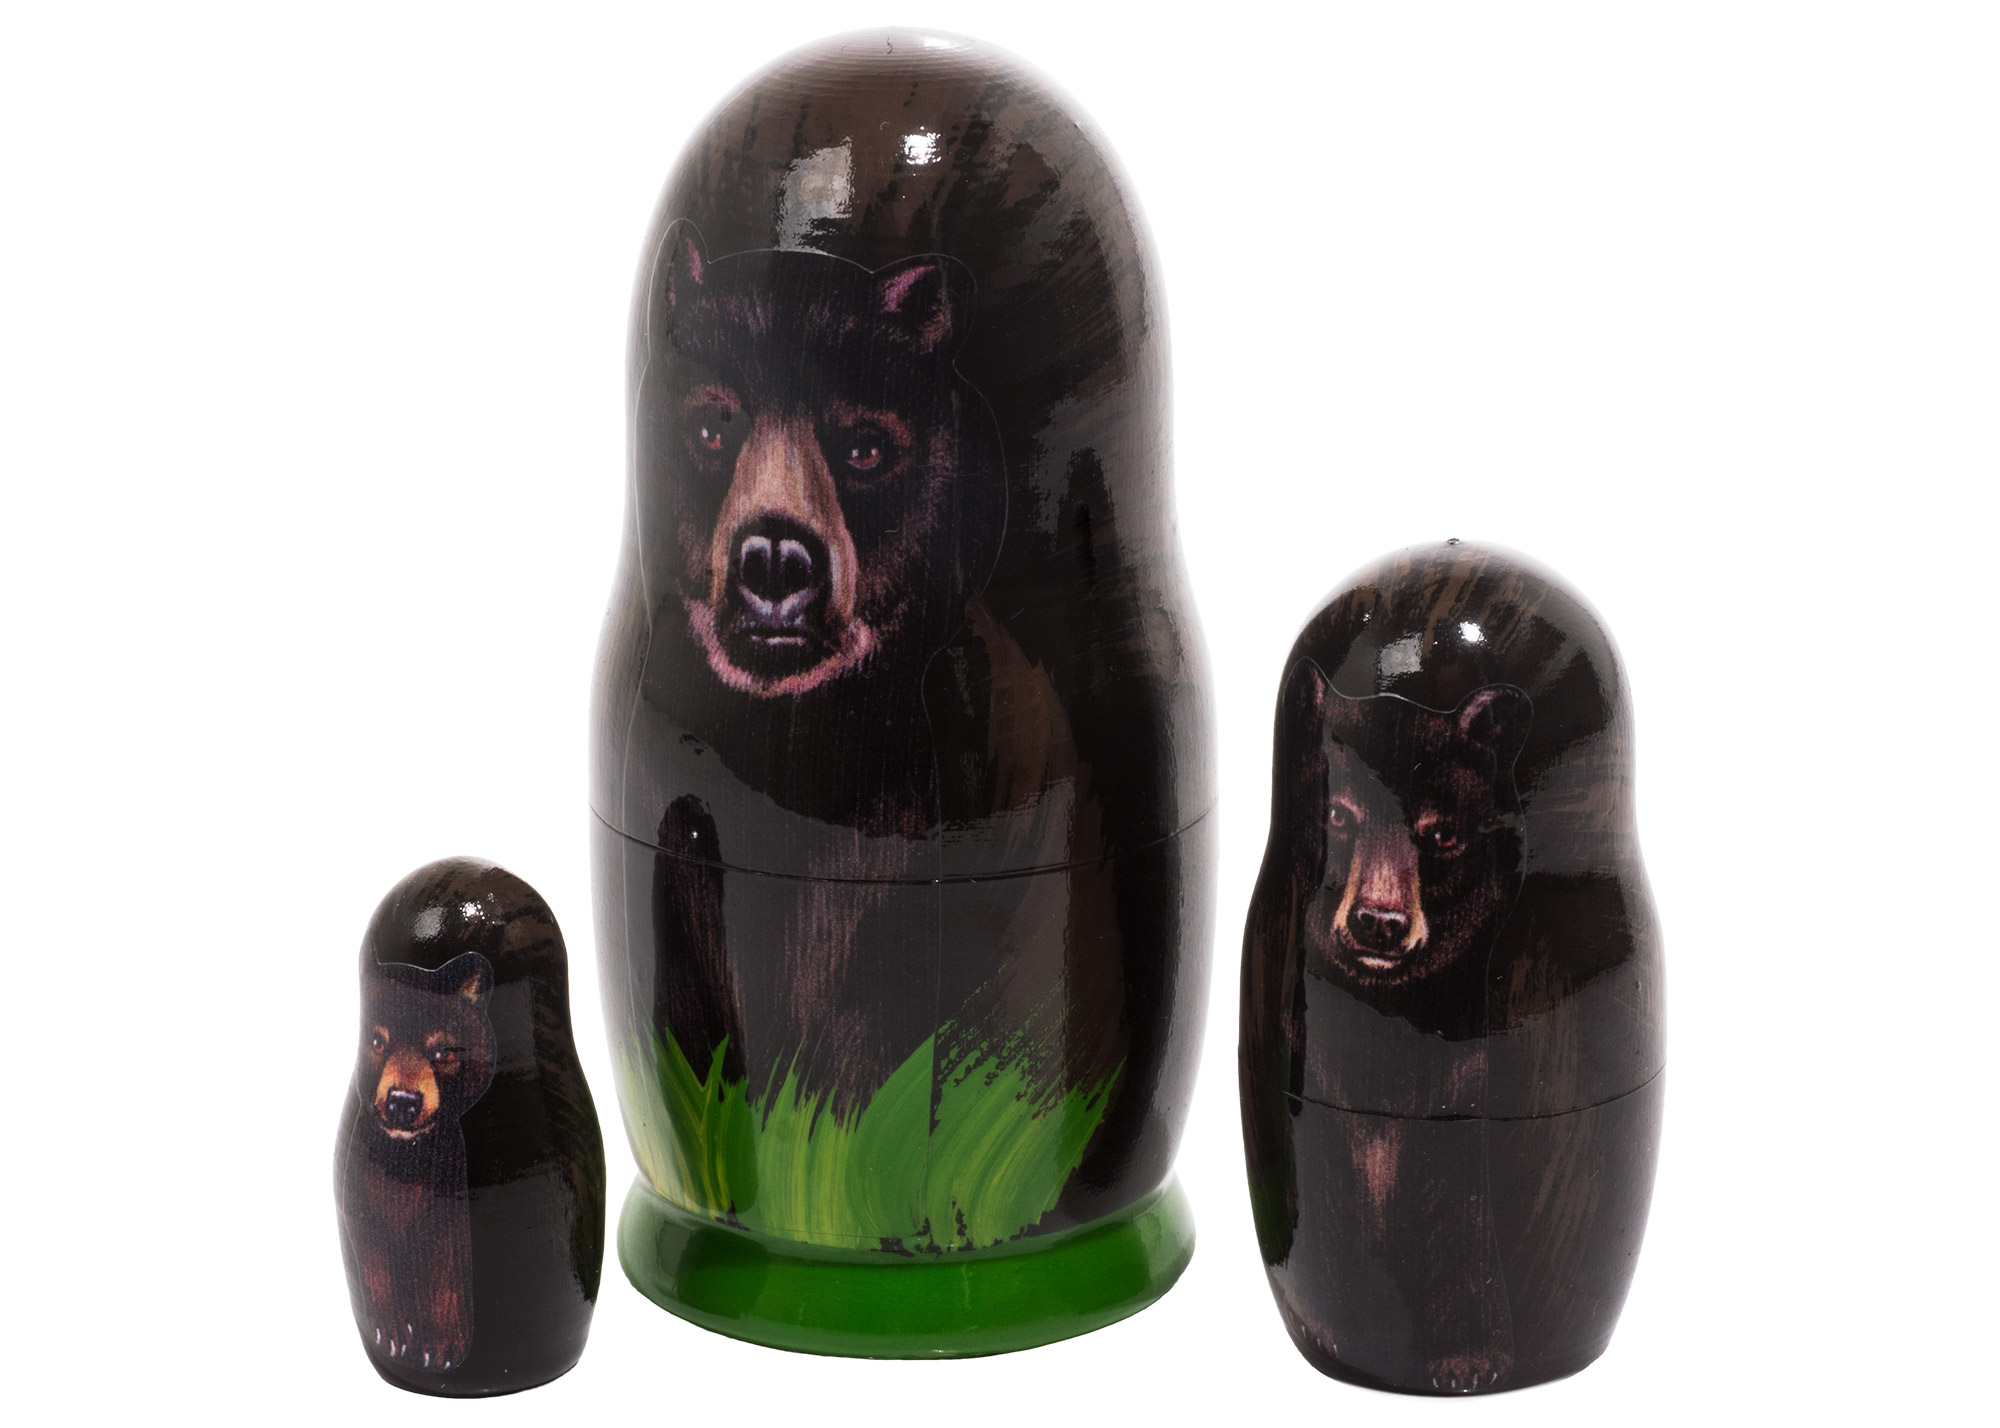 Buy Матрешка «Черный медведь» 3 места 9 см at GoldenCockerel.com